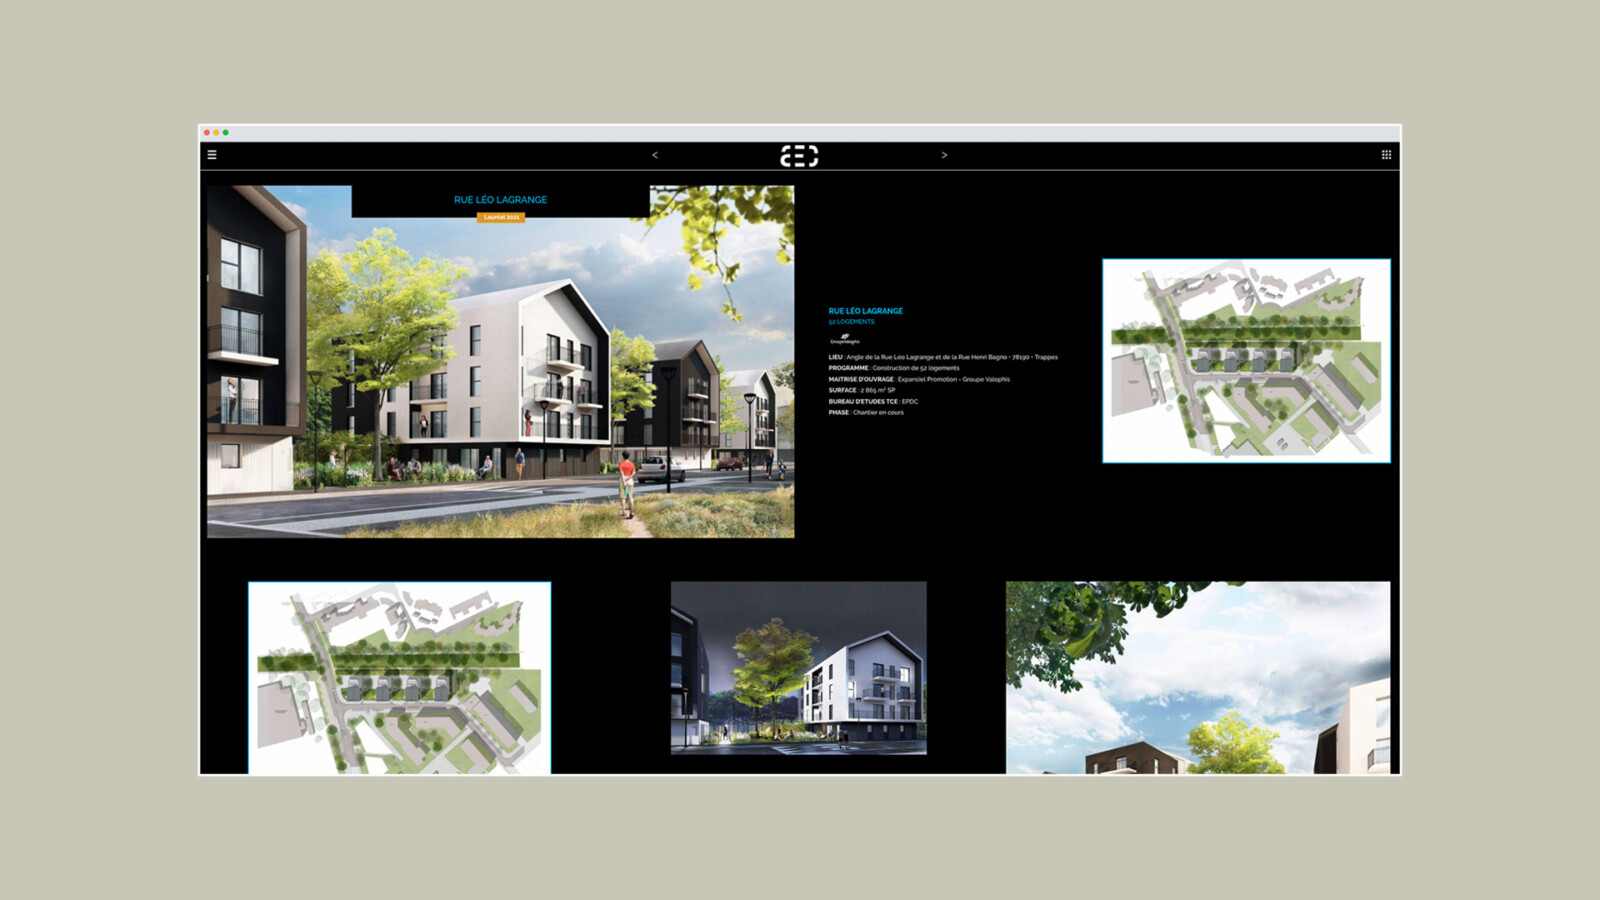 Vue sur desktop du site d’AEC Architecture. On peut voir les photos et les plans d’un projet d’habitation de quatre bâtiments à trois étages, en bordure d’une rue.